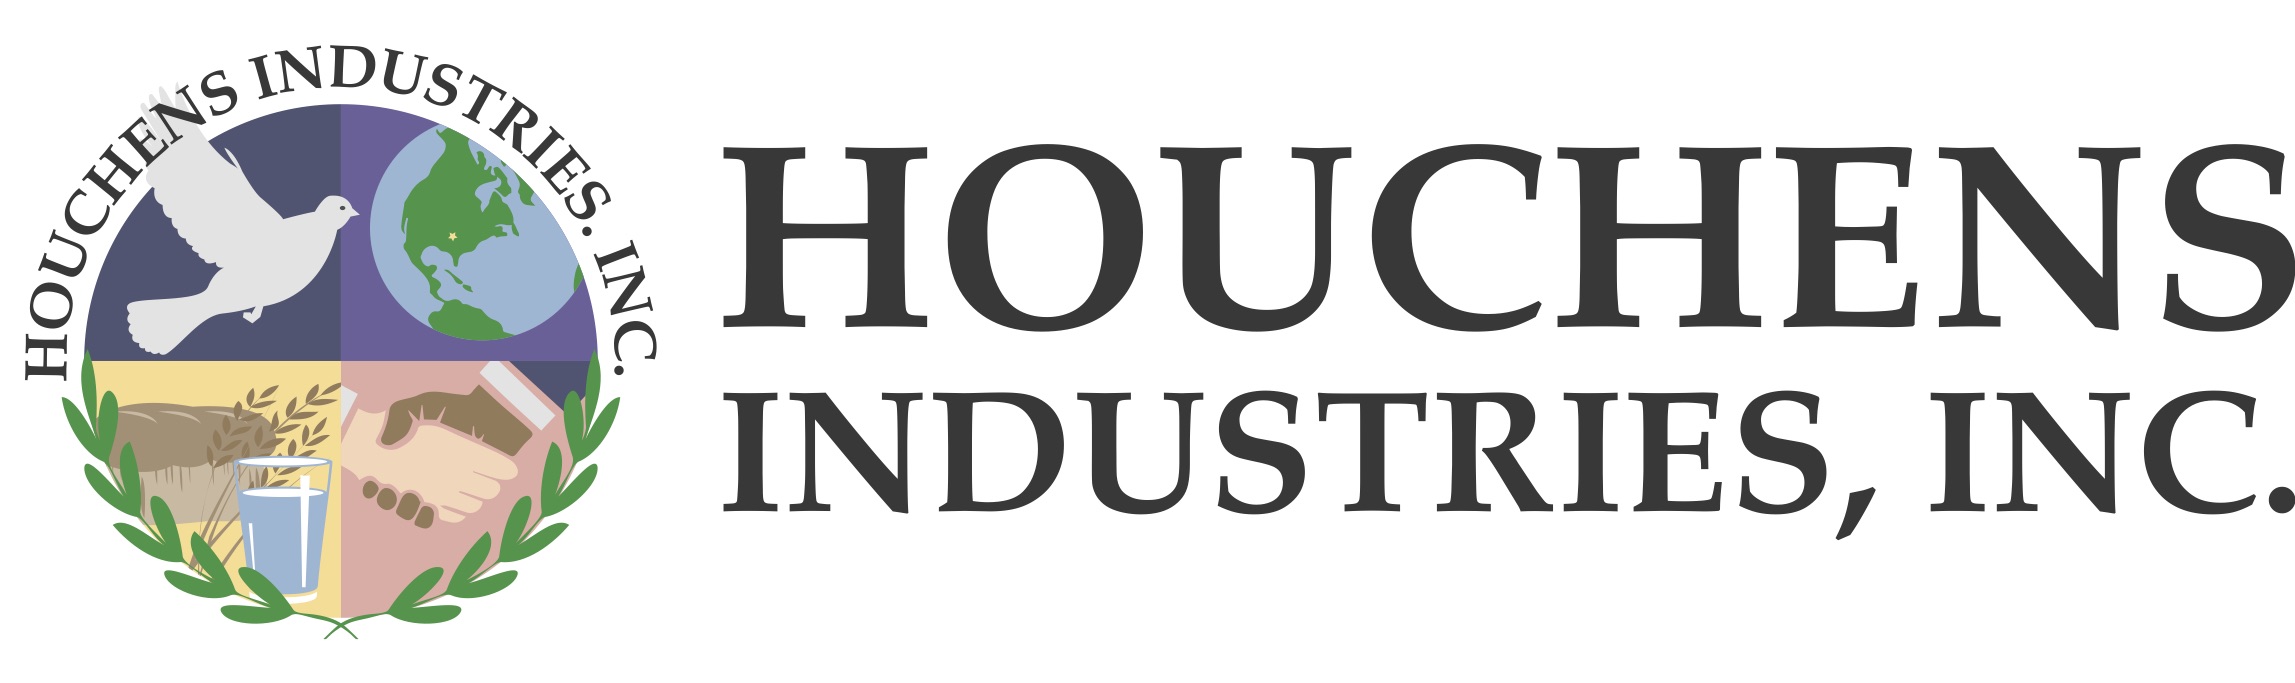 Houchens Industries Inc.